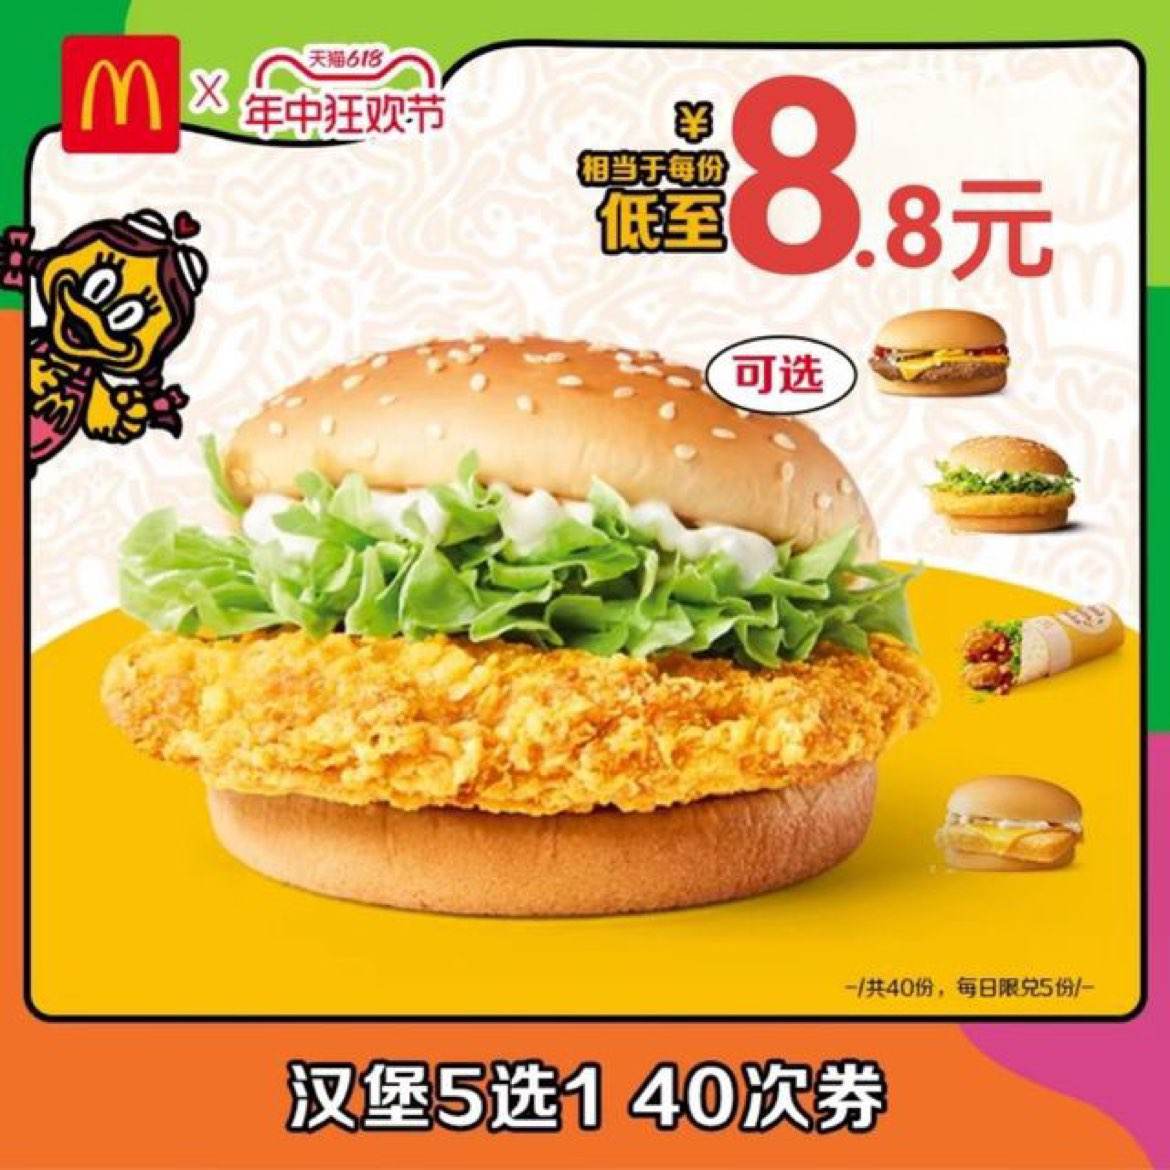 McDonalds 麦当劳 『麦辣鸡腿堡/麦香鱼』每份8.8元 共40份 352元包邮